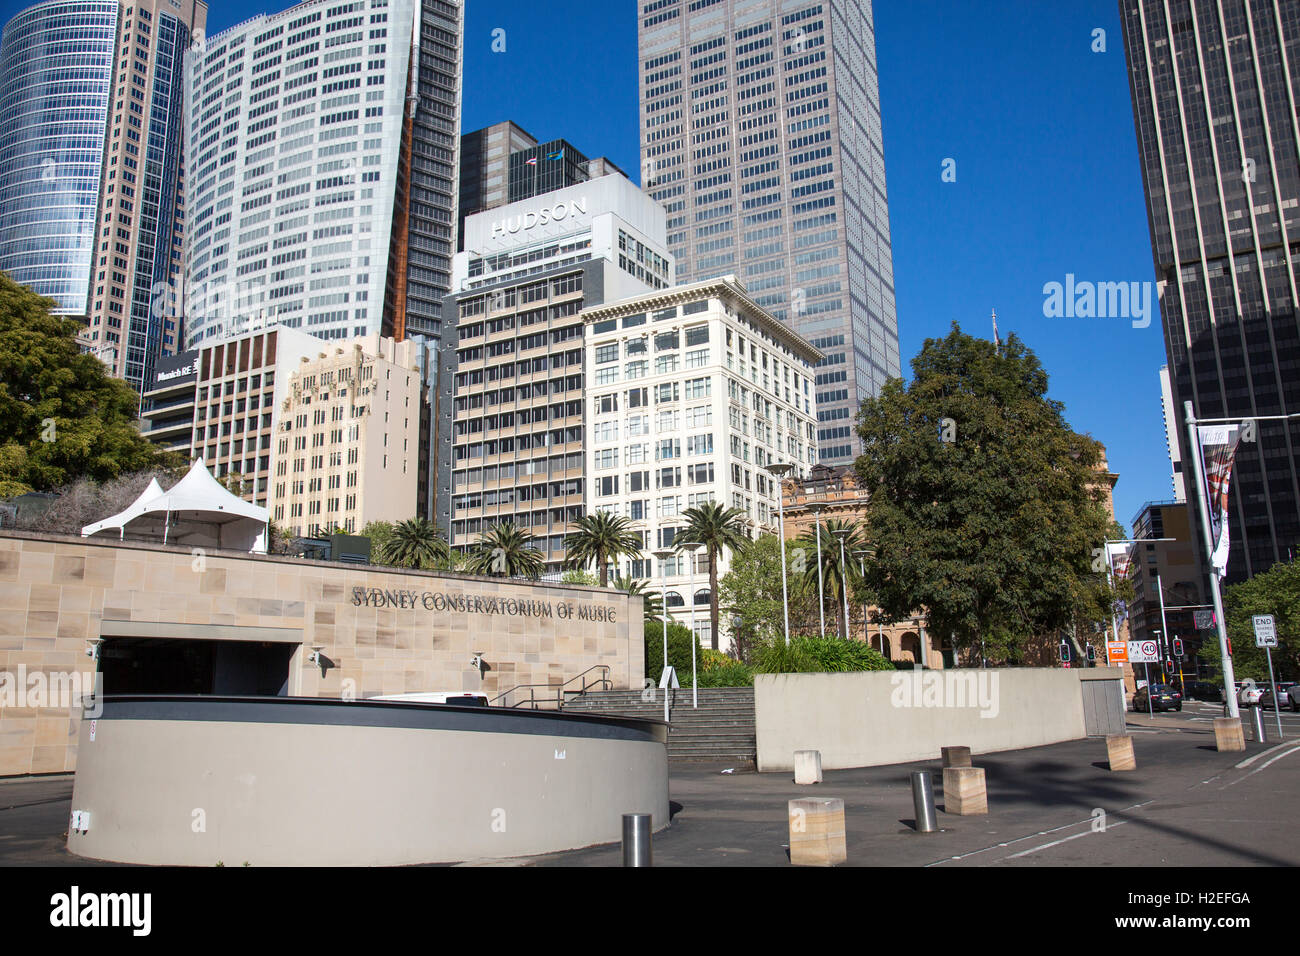 Sydney Conservatorium of Music dans le centre-ville,Sydney, Australie avec le célèbre gratte-ciel y compris aurora place derrière Banque D'Images